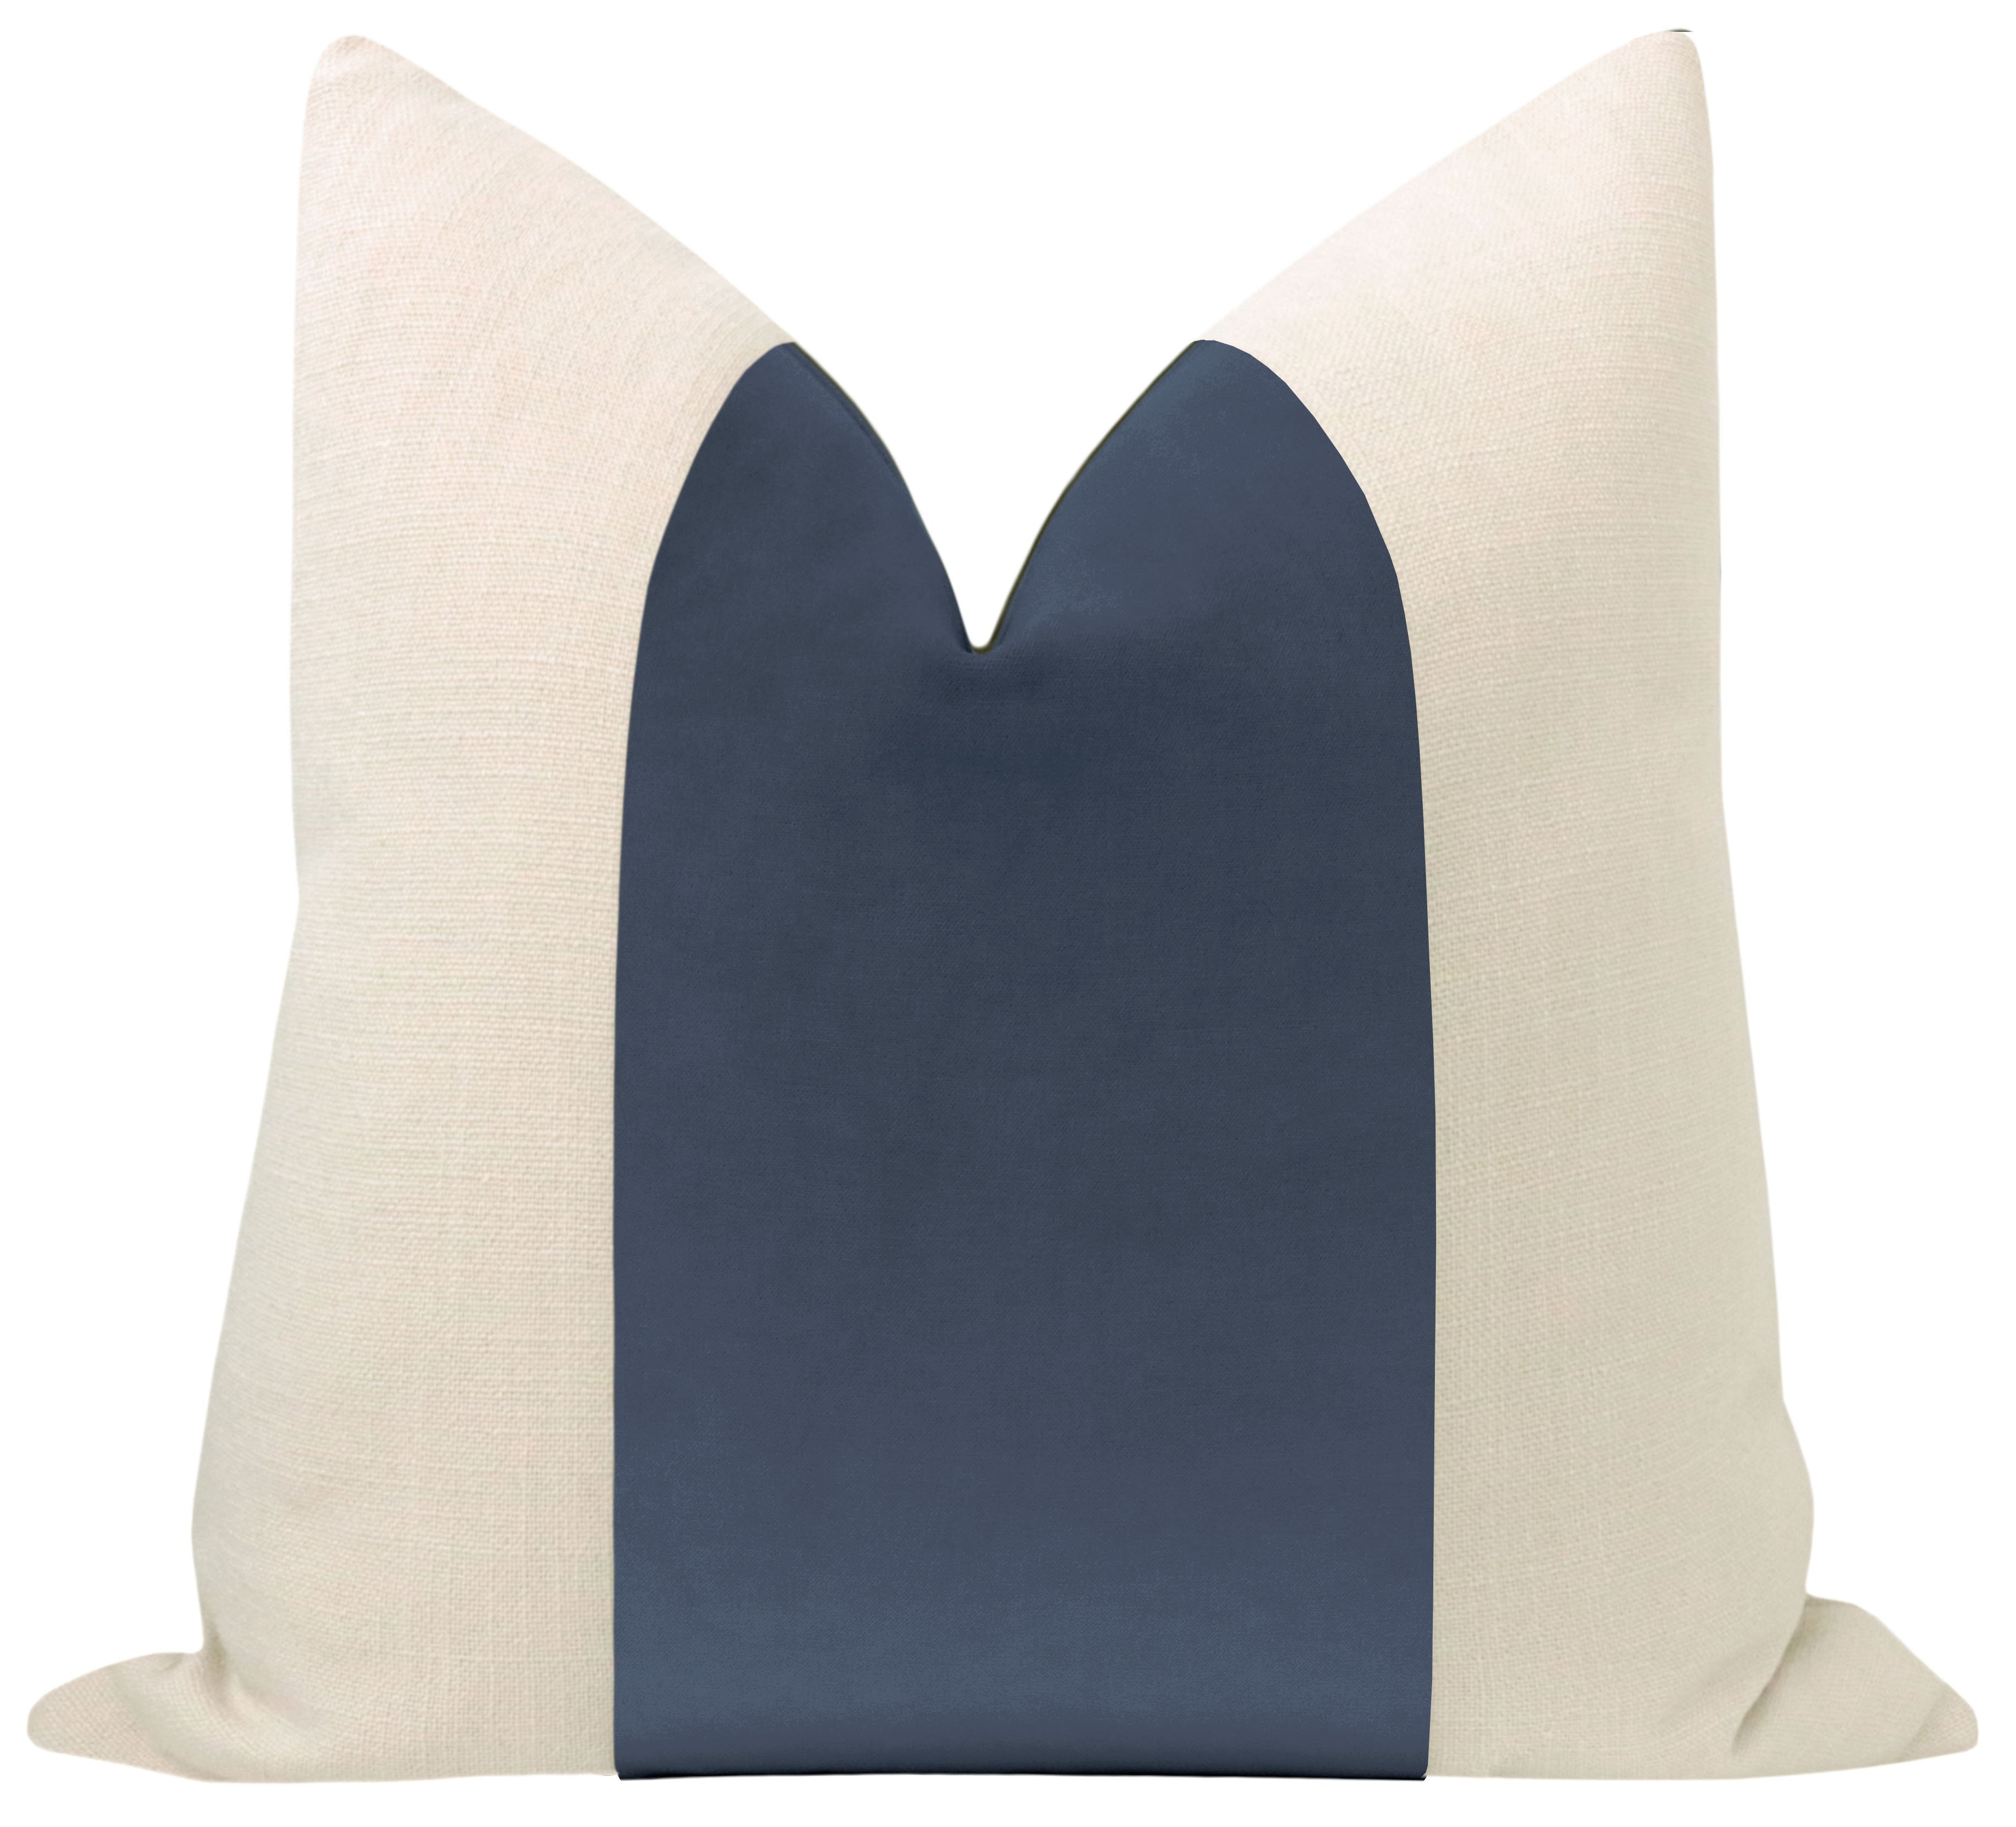 Classic Velvet Pillow Cover, Capri Blue, 20" x 20" - Little Design Company